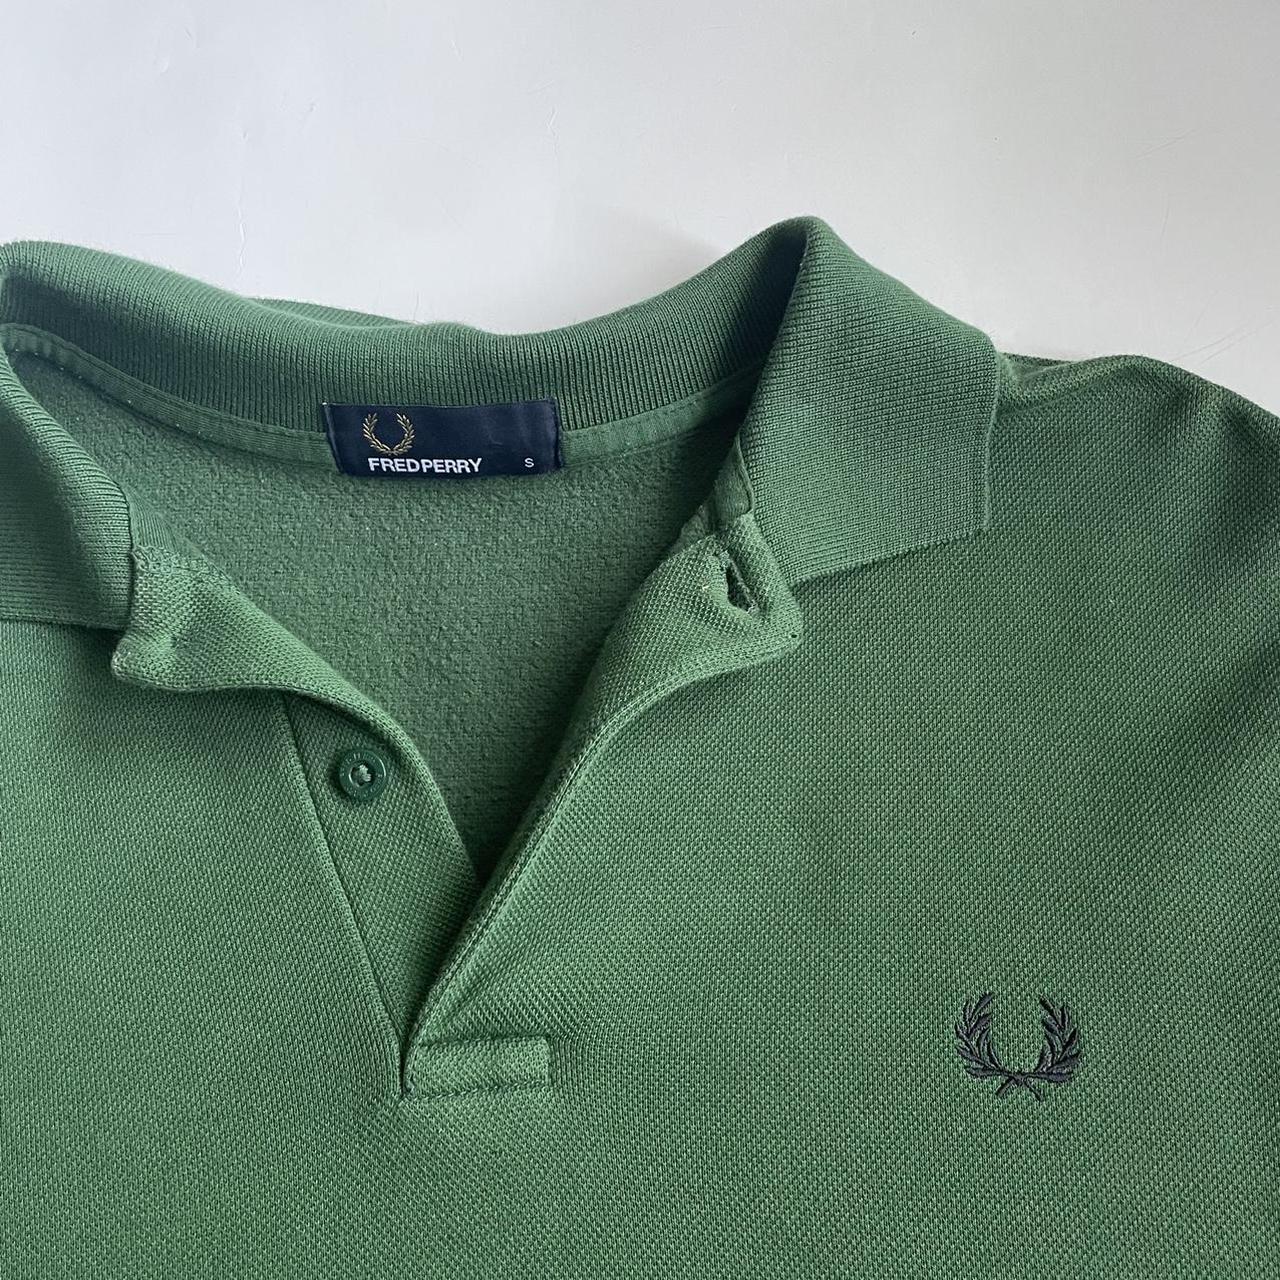 Fred Perry Women's Green Sweatshirt | Depop